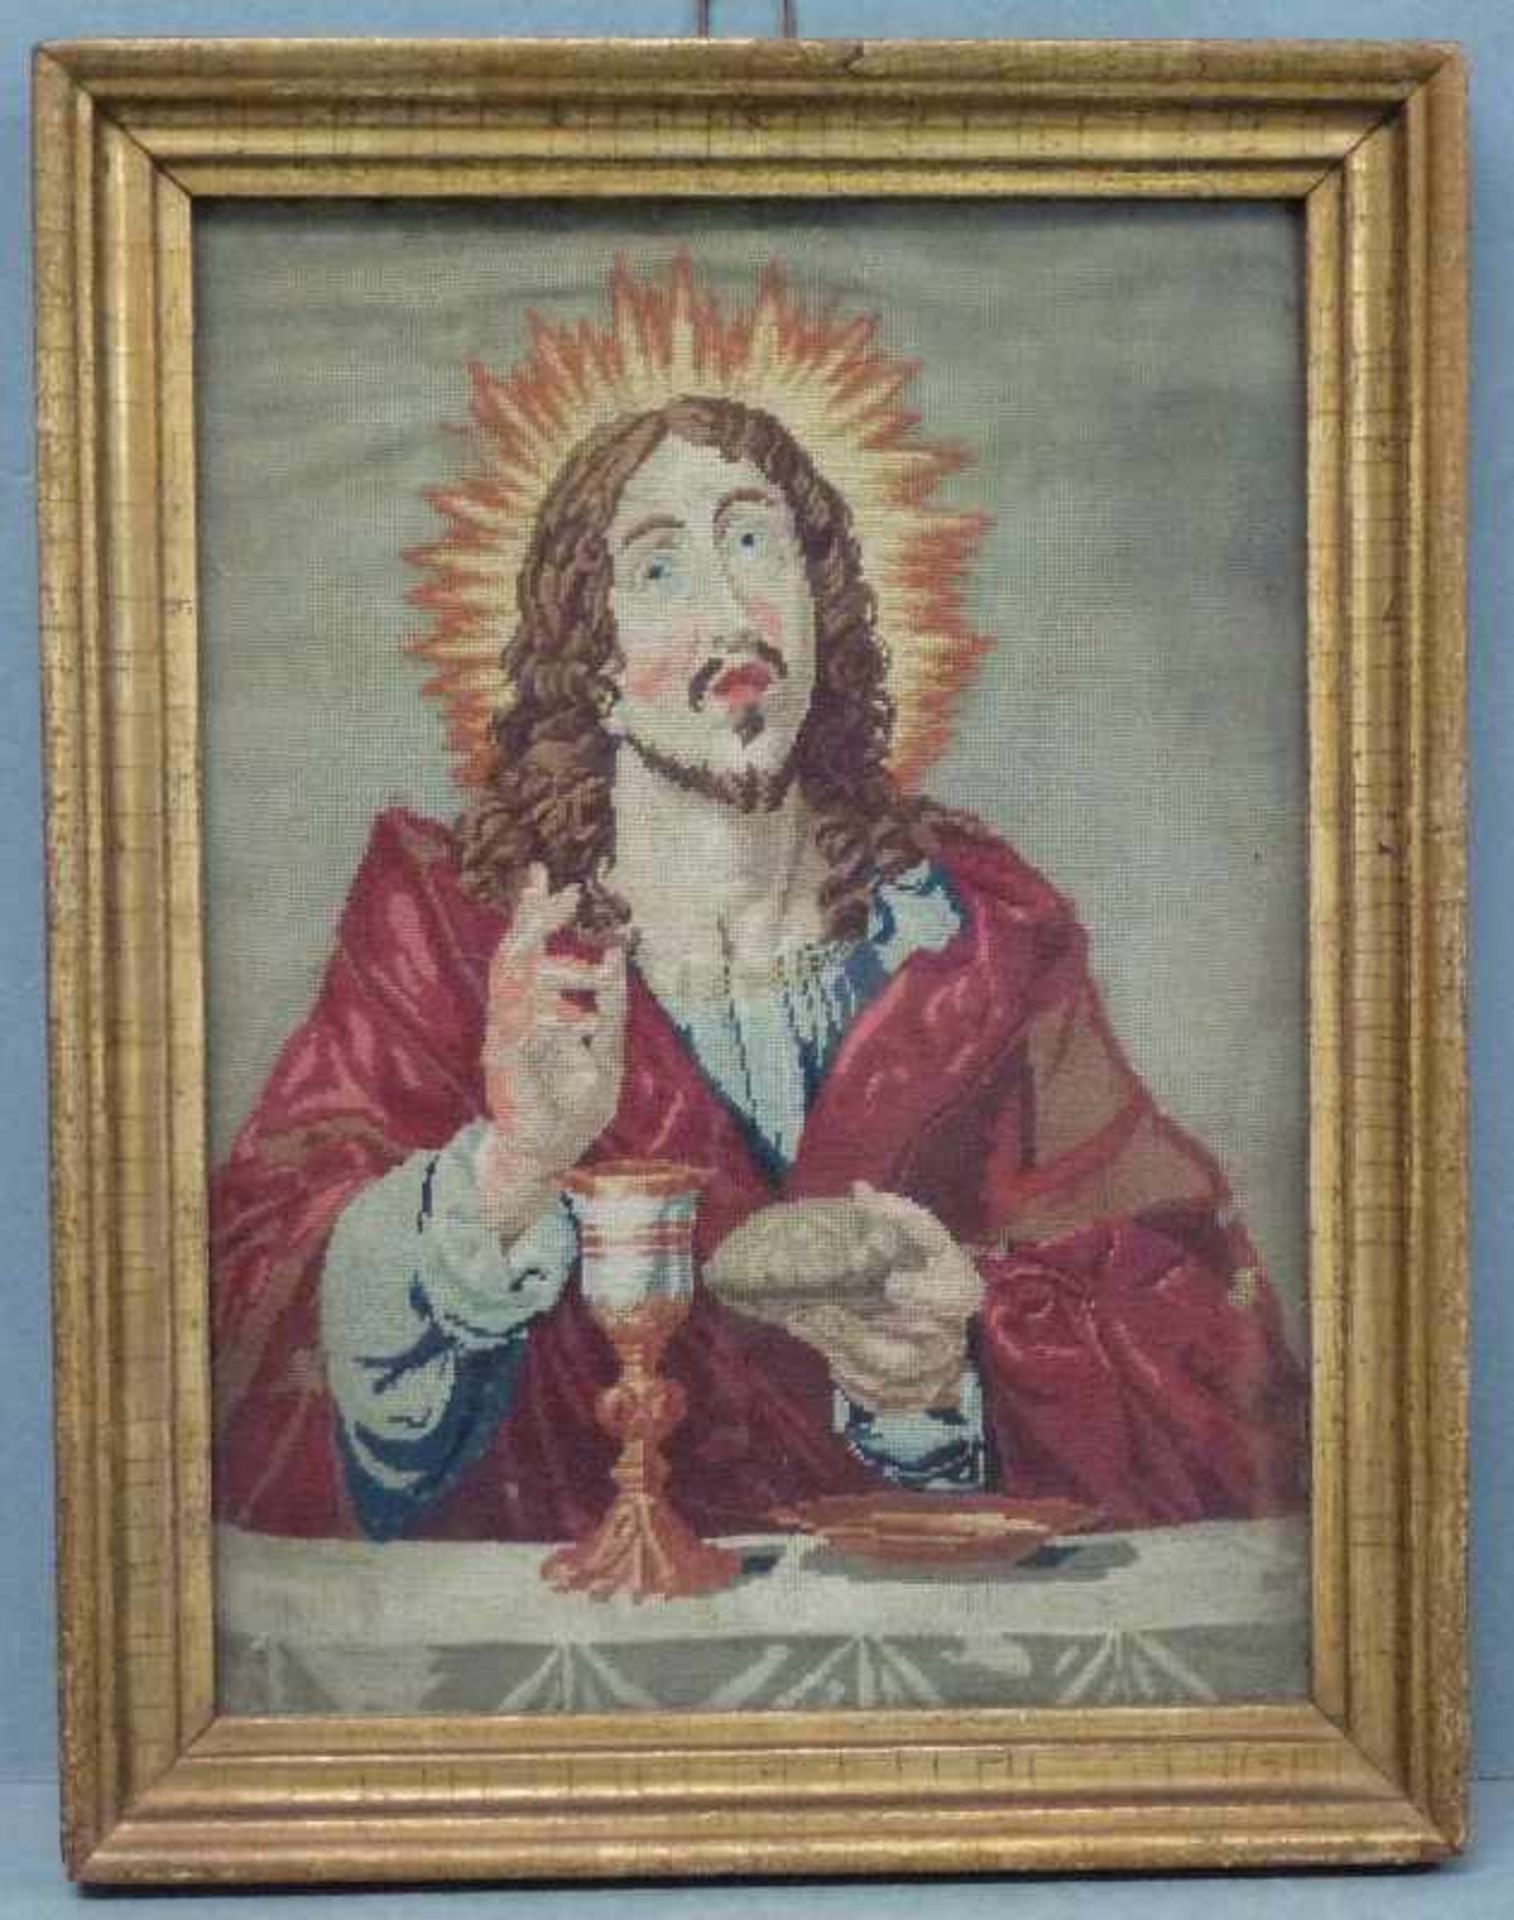 Stickbild, Christus, 19.Jh. Wein und Brot segnender Christus, kl. Fehlstellen, alte Goldleiste, - Bild 2 aus 2